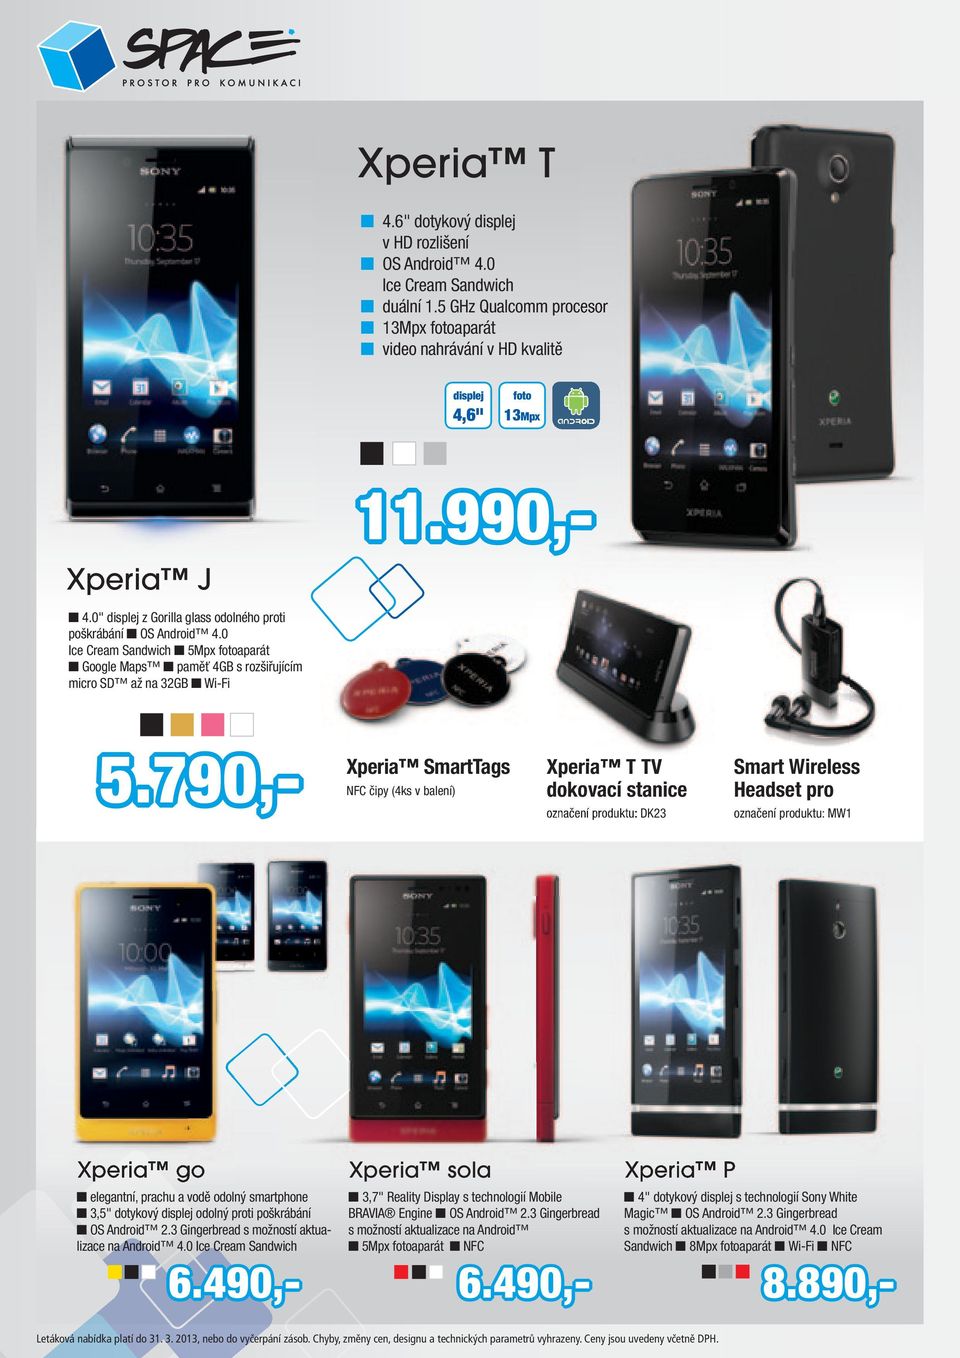 790,- Xperia SmartTags NFC čipy (4ks v balení) Xperia T TV dokovací stanice označení produktu: DK23 Smart Wireless Headset pro označení produktu: MW1 Xperia go elegantní, prachu a vodě odolný